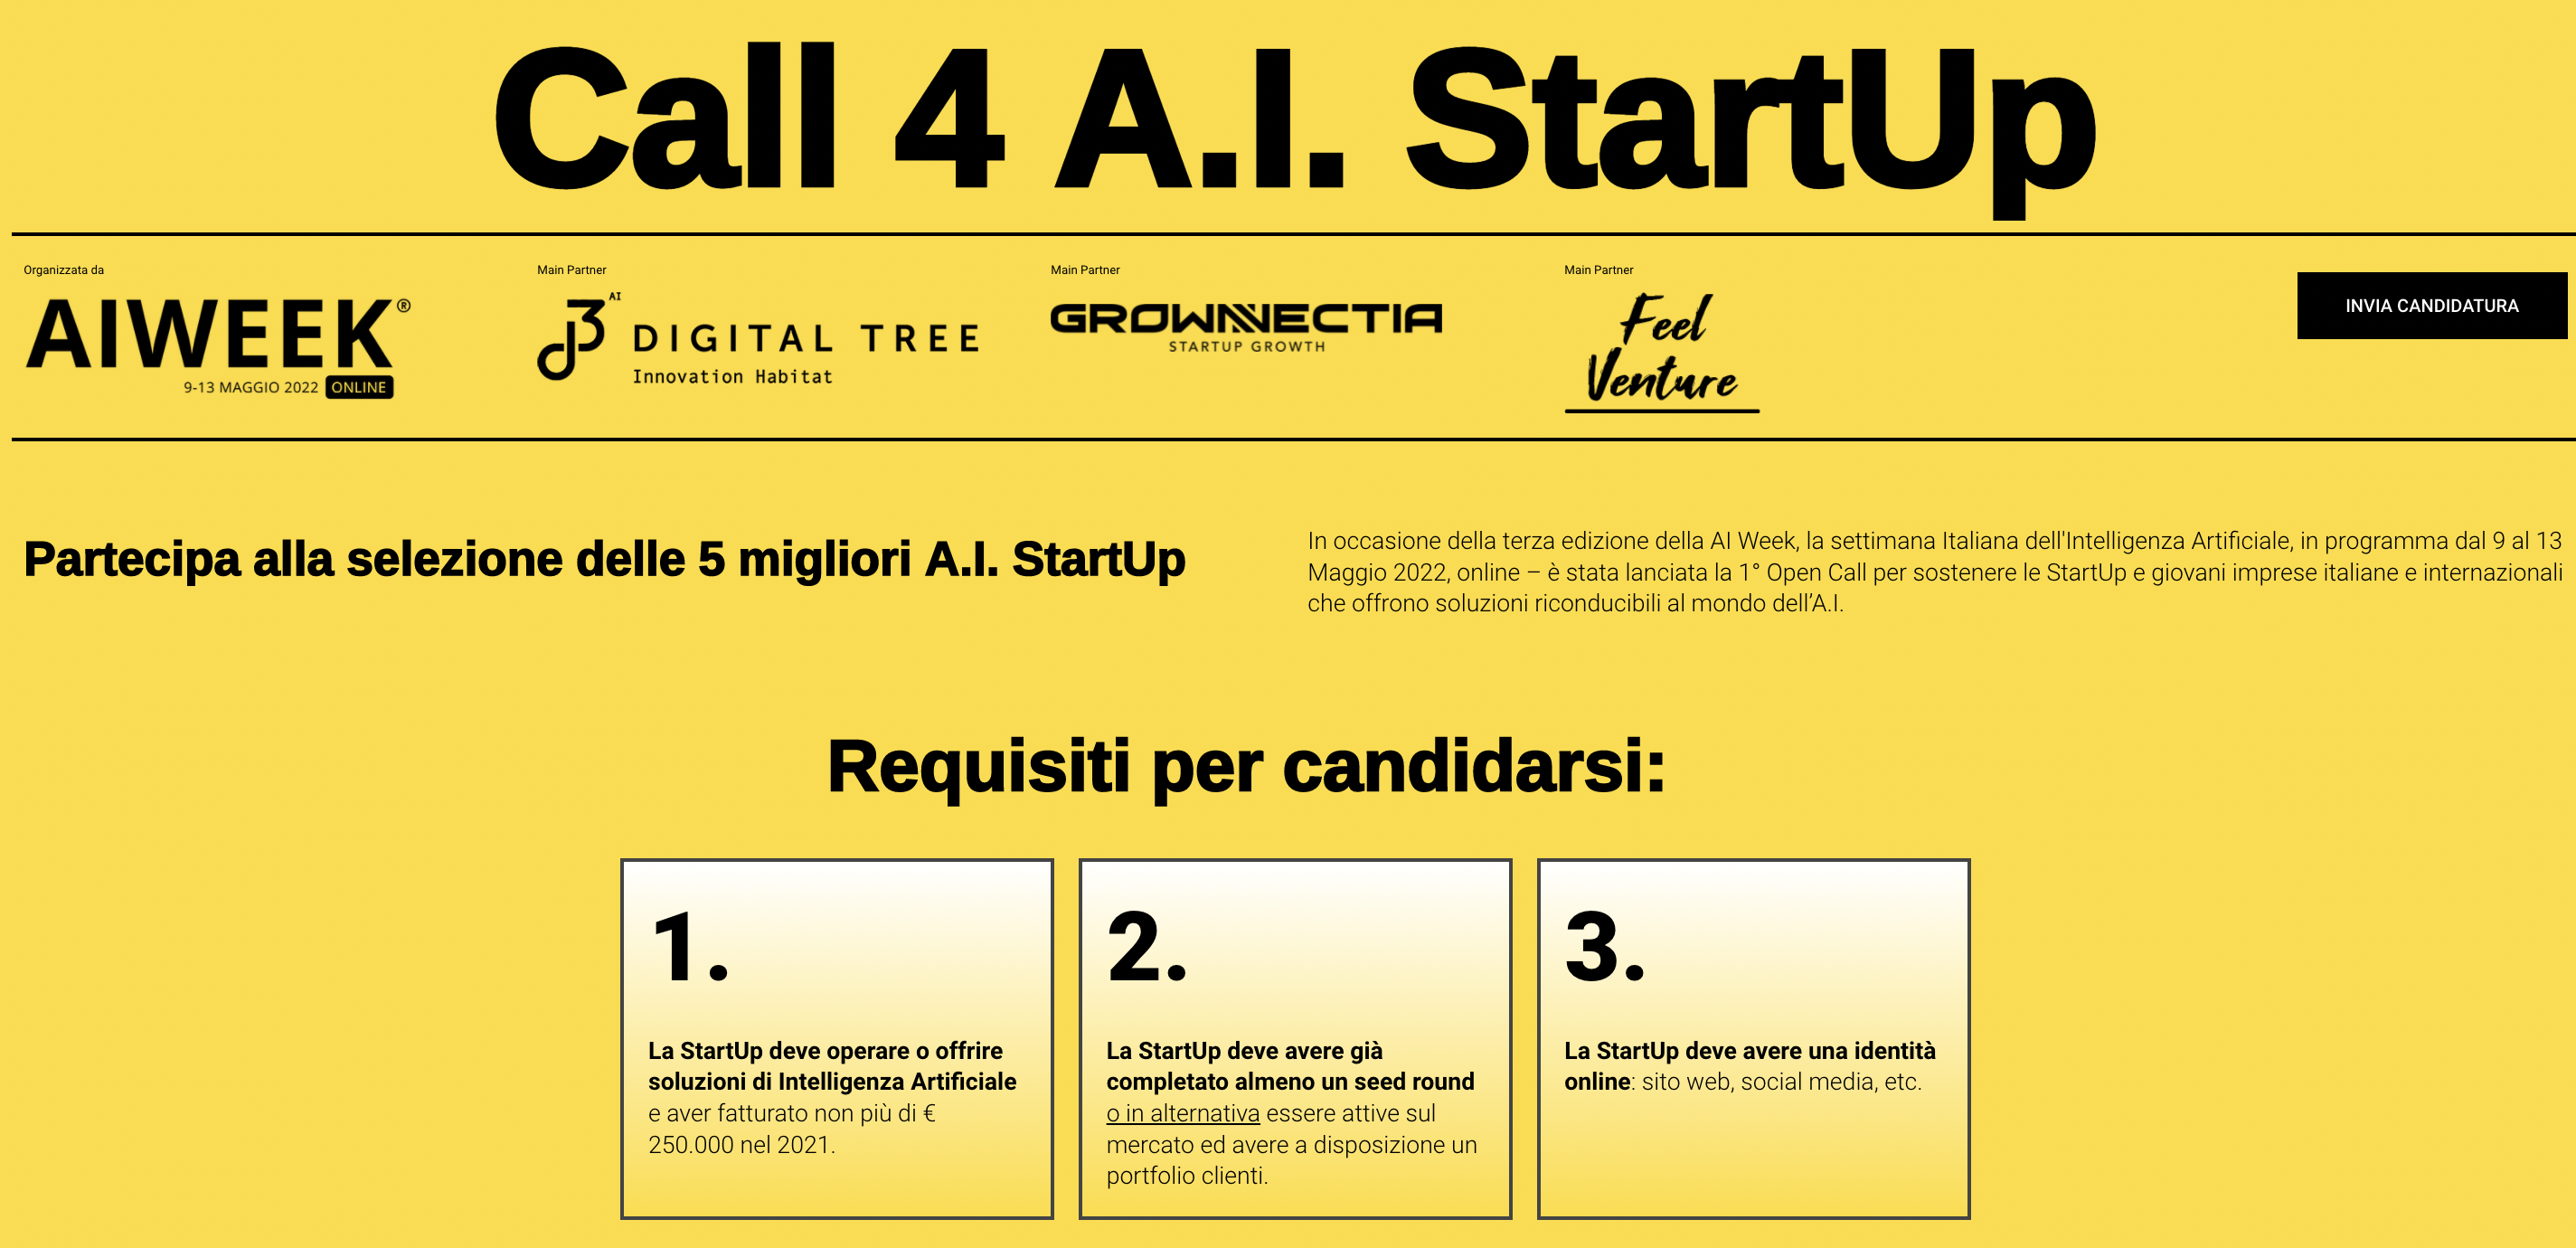 Os 3 requisitos para se candidatar ao "Call 4 AI Startup" no âmbito da edição 2022 da "AI Week"